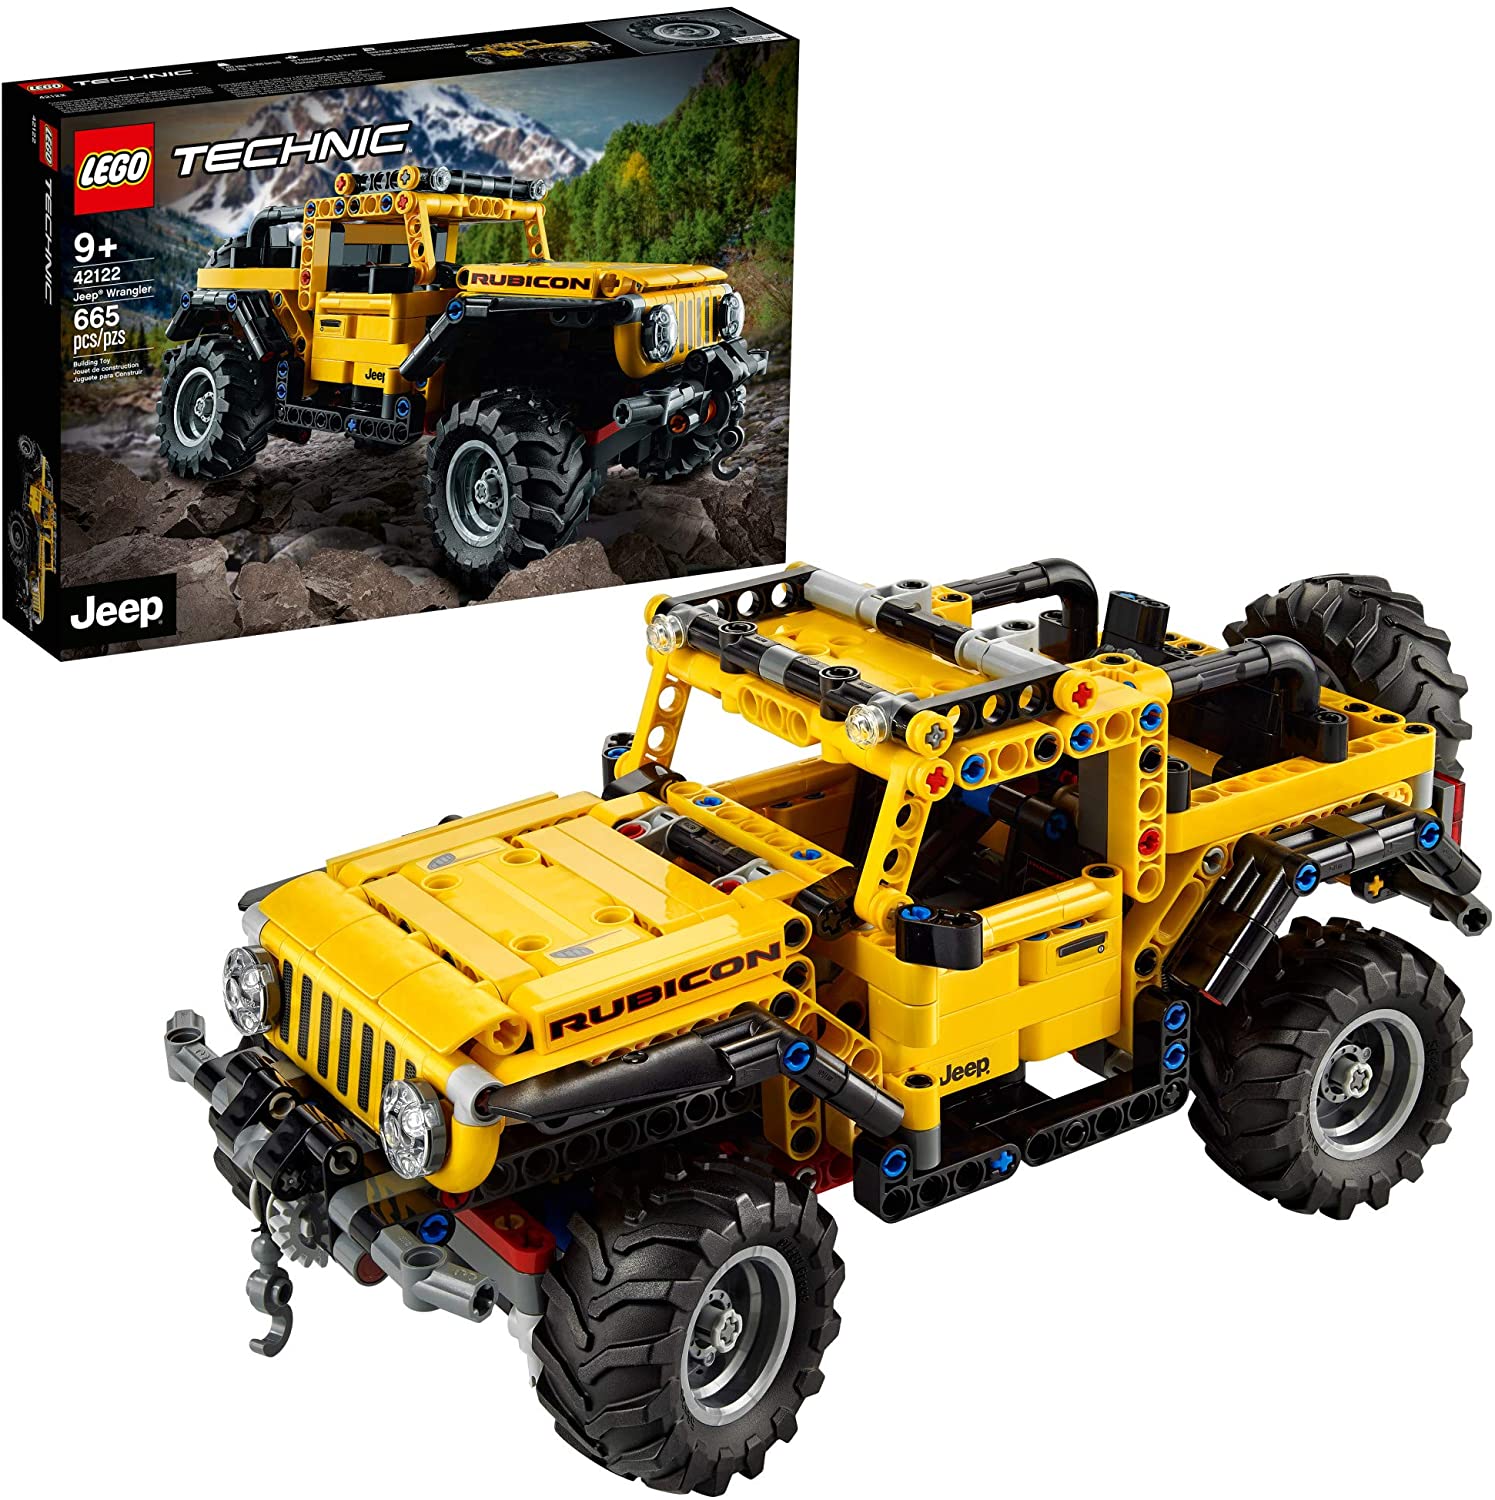 Đồ chơi LEGO TECHNIC - Xe Địa Hình Jeep Wrangler - 42122 